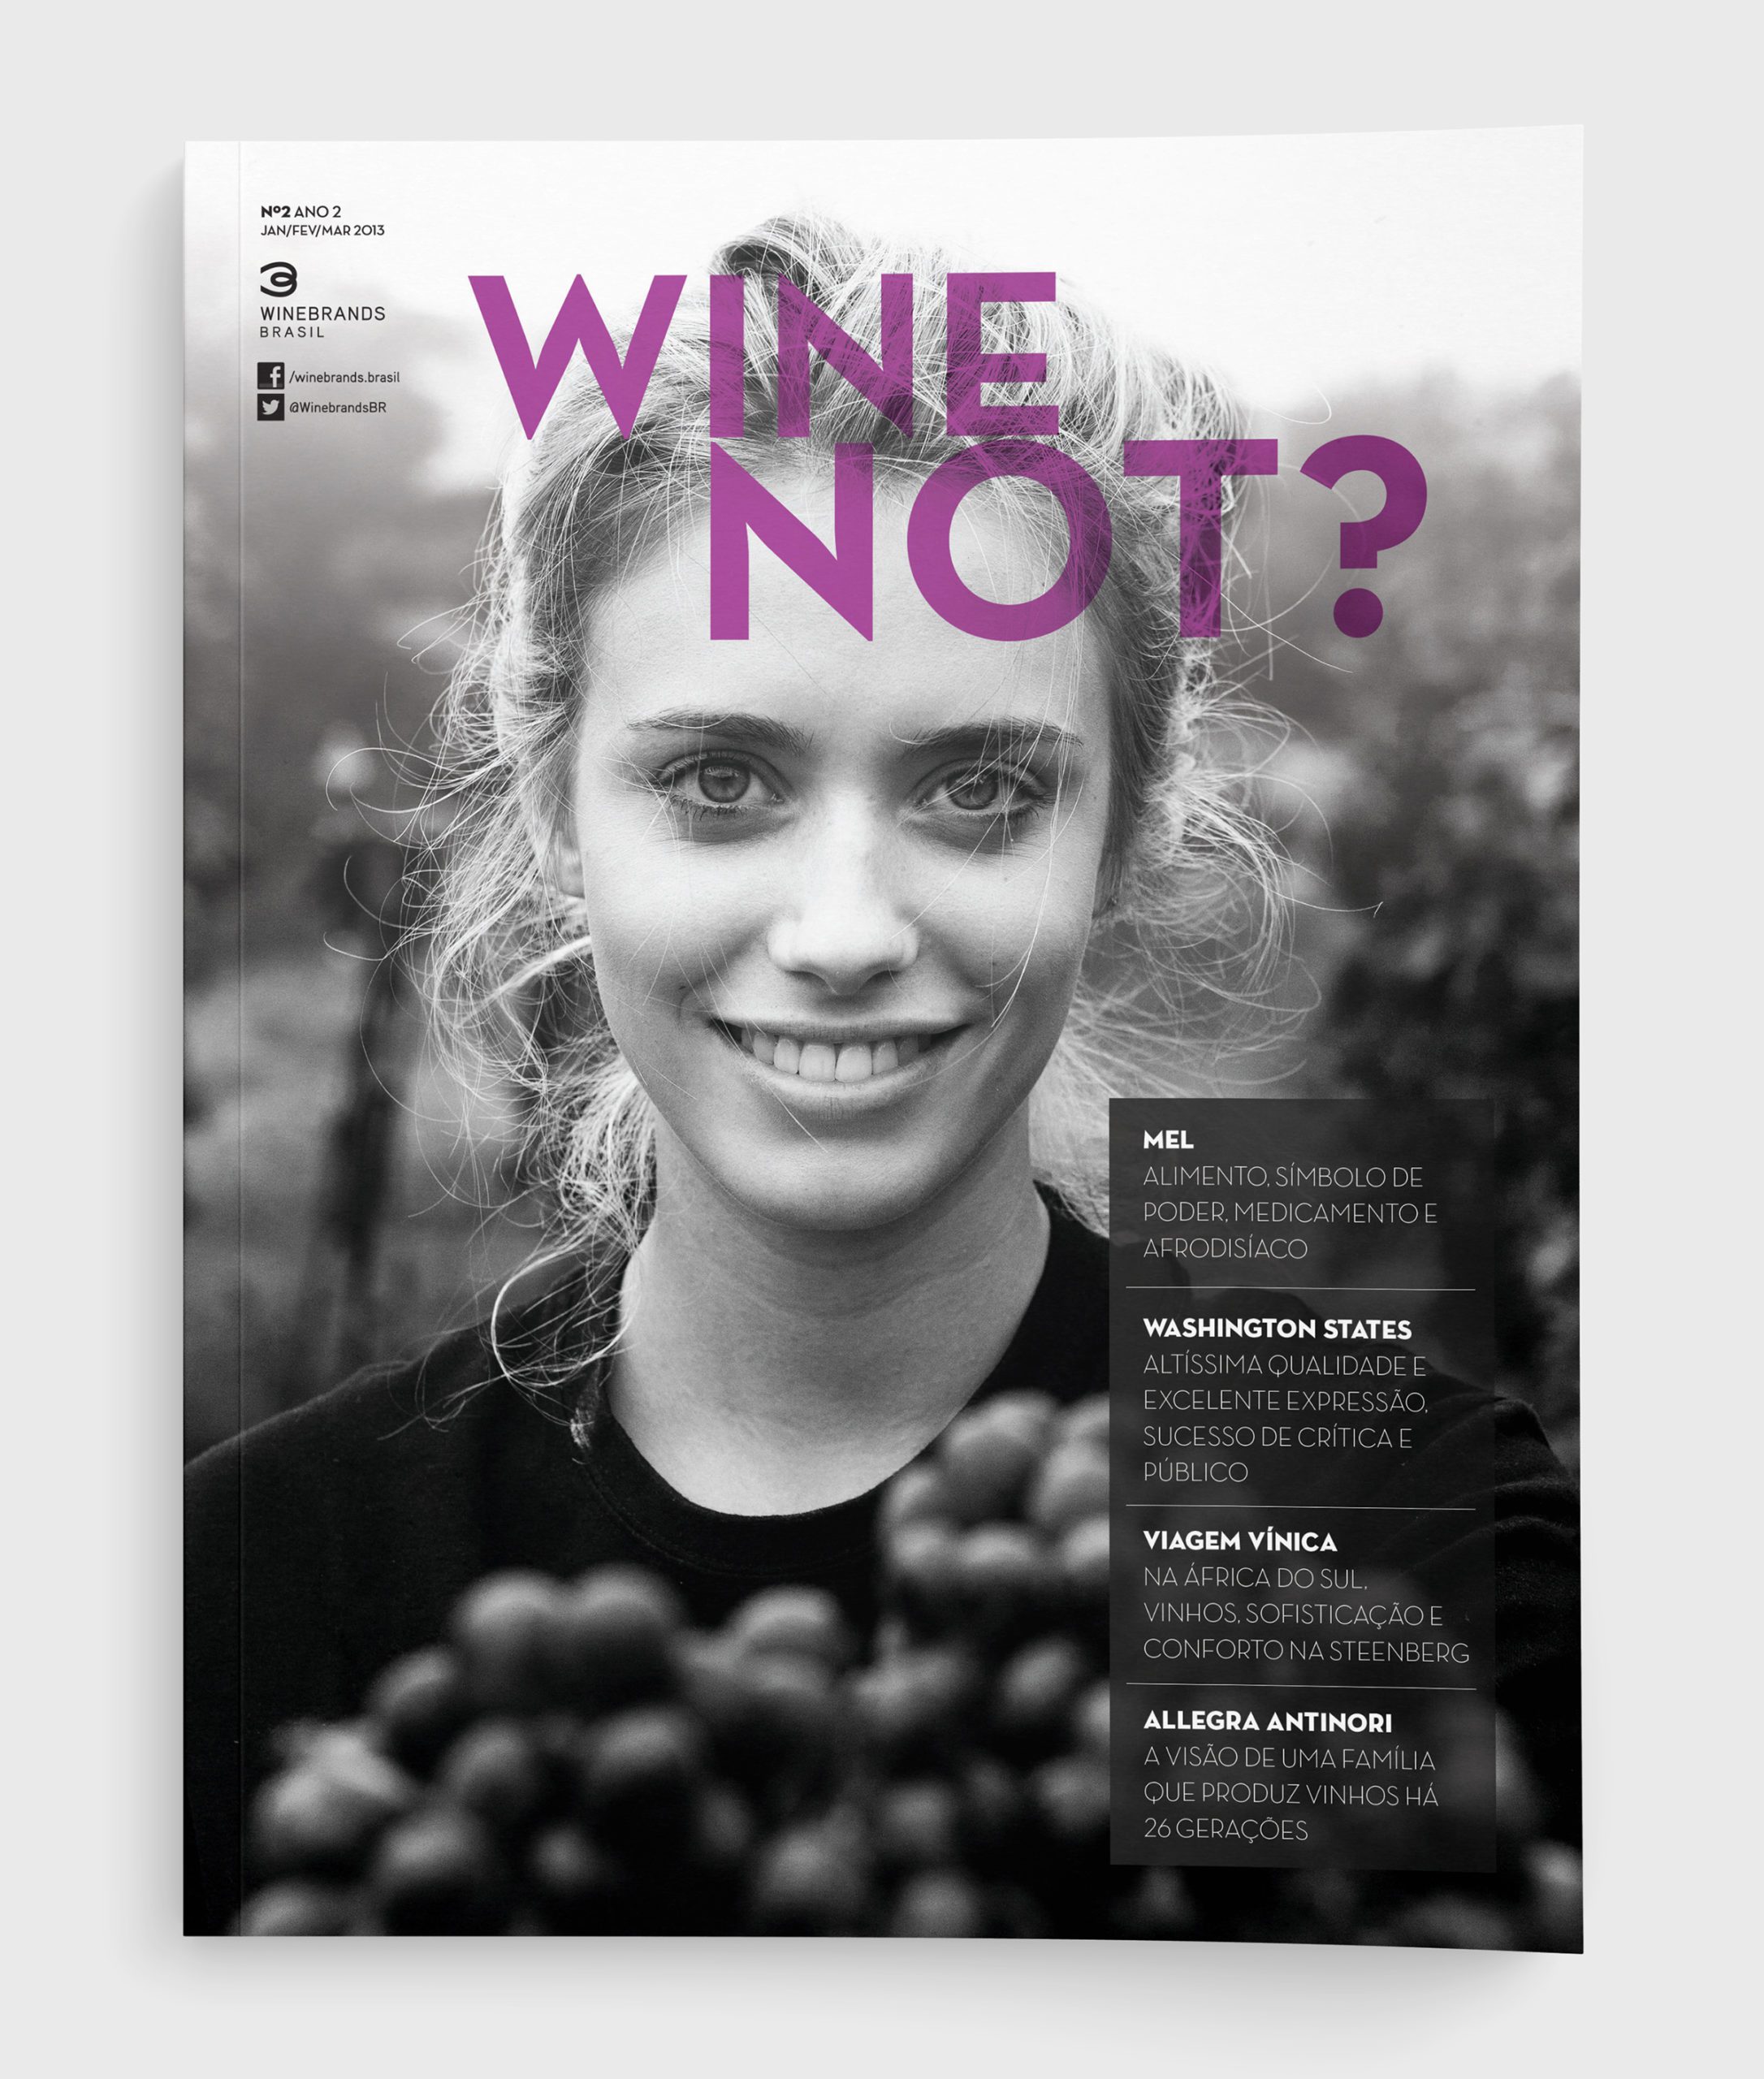 Capa para a revista "Wine Not?" número 2. Criada pela Brandium no âmbito do projeto de Identidade Visual